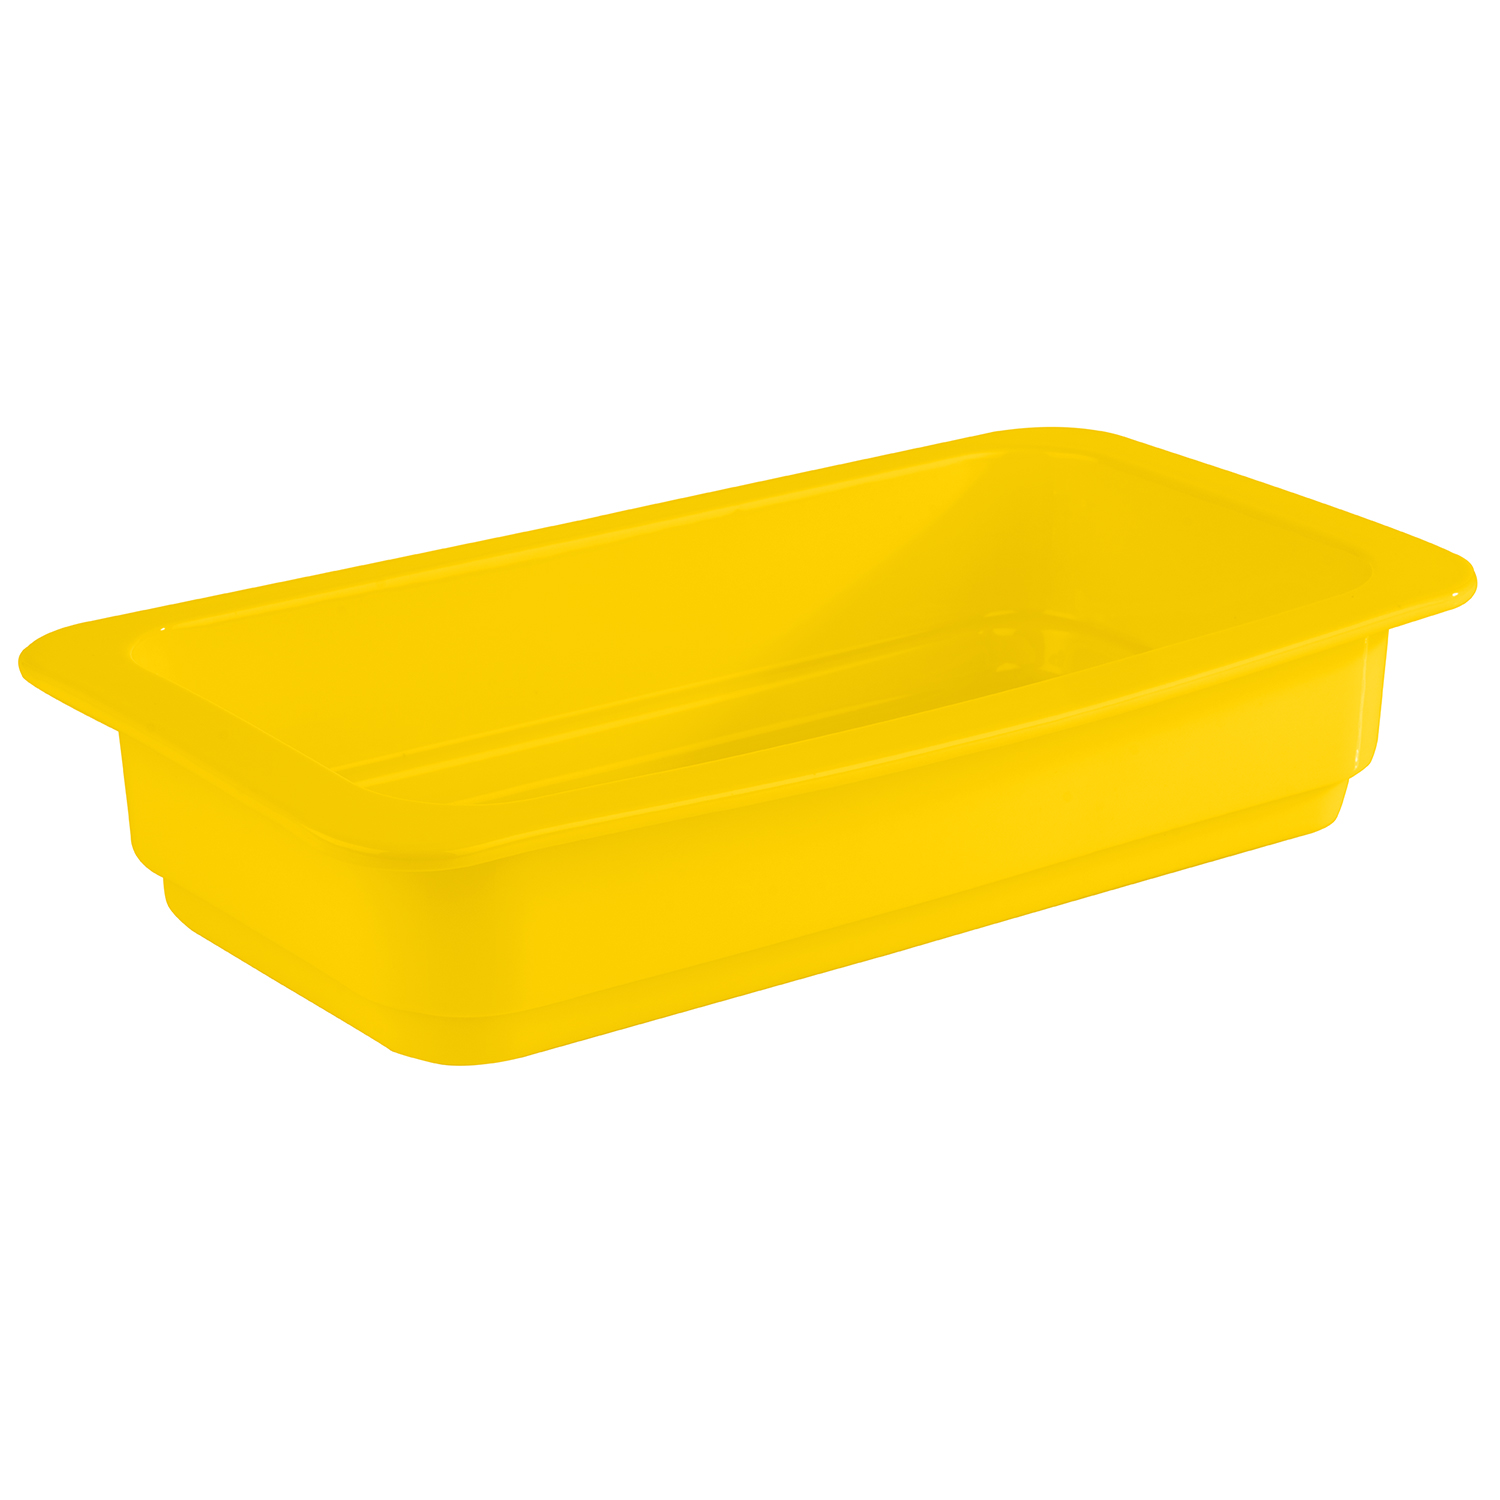 GN 1/3 Behälter, gelb, 32,5 x 17,6 cm, H: 6 cm                 